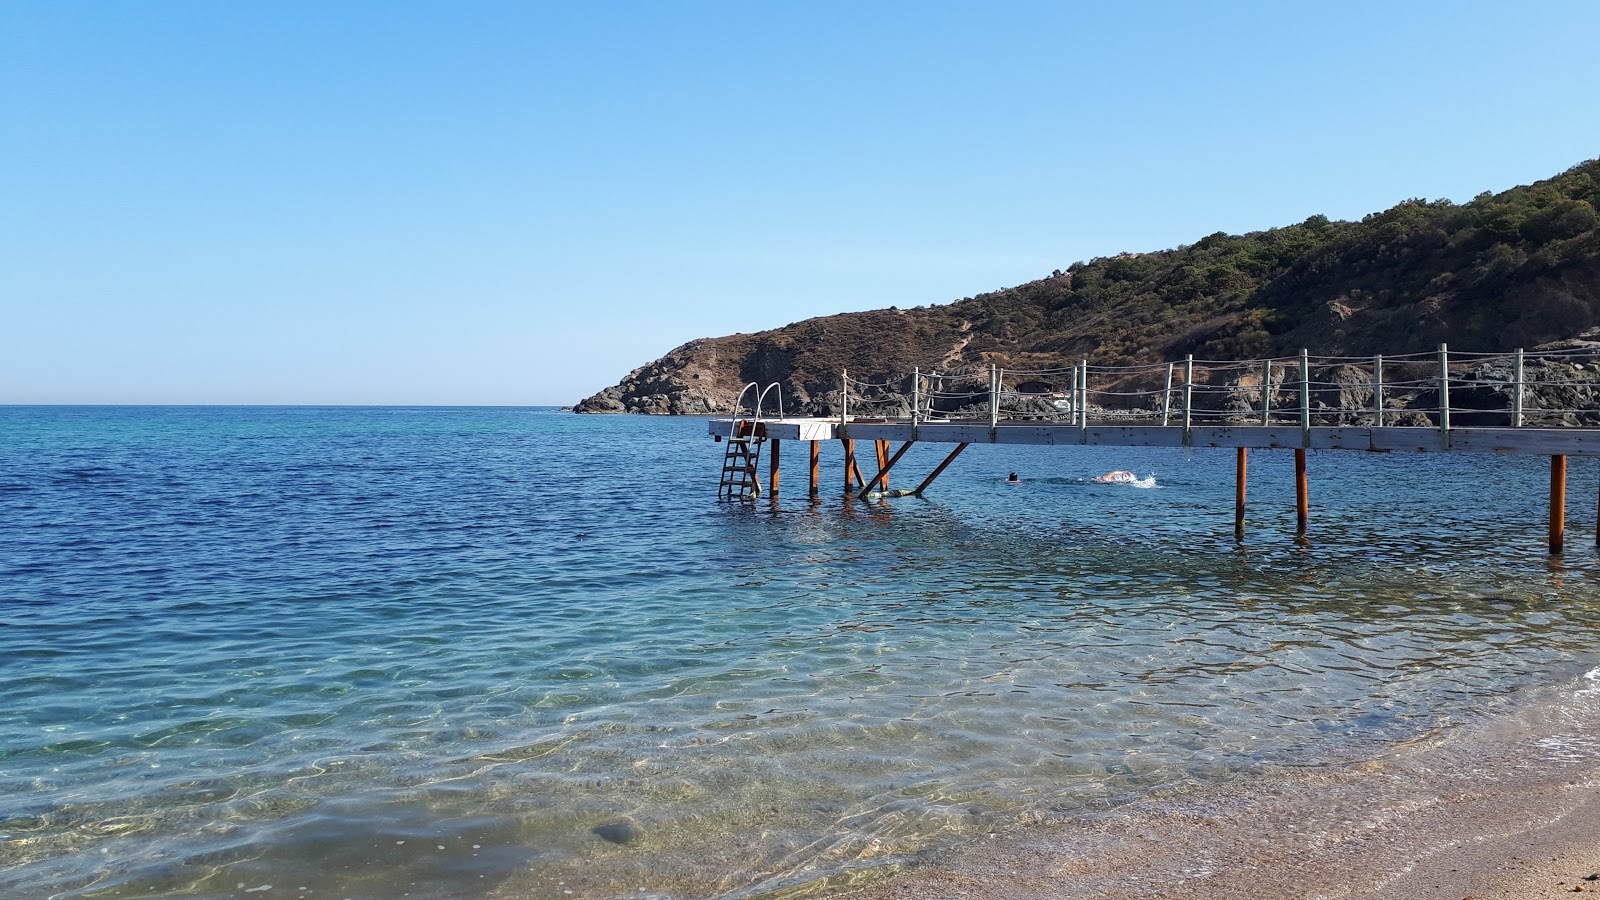 Milyos beach'in fotoğrafı plaj tatil beldesi alanı